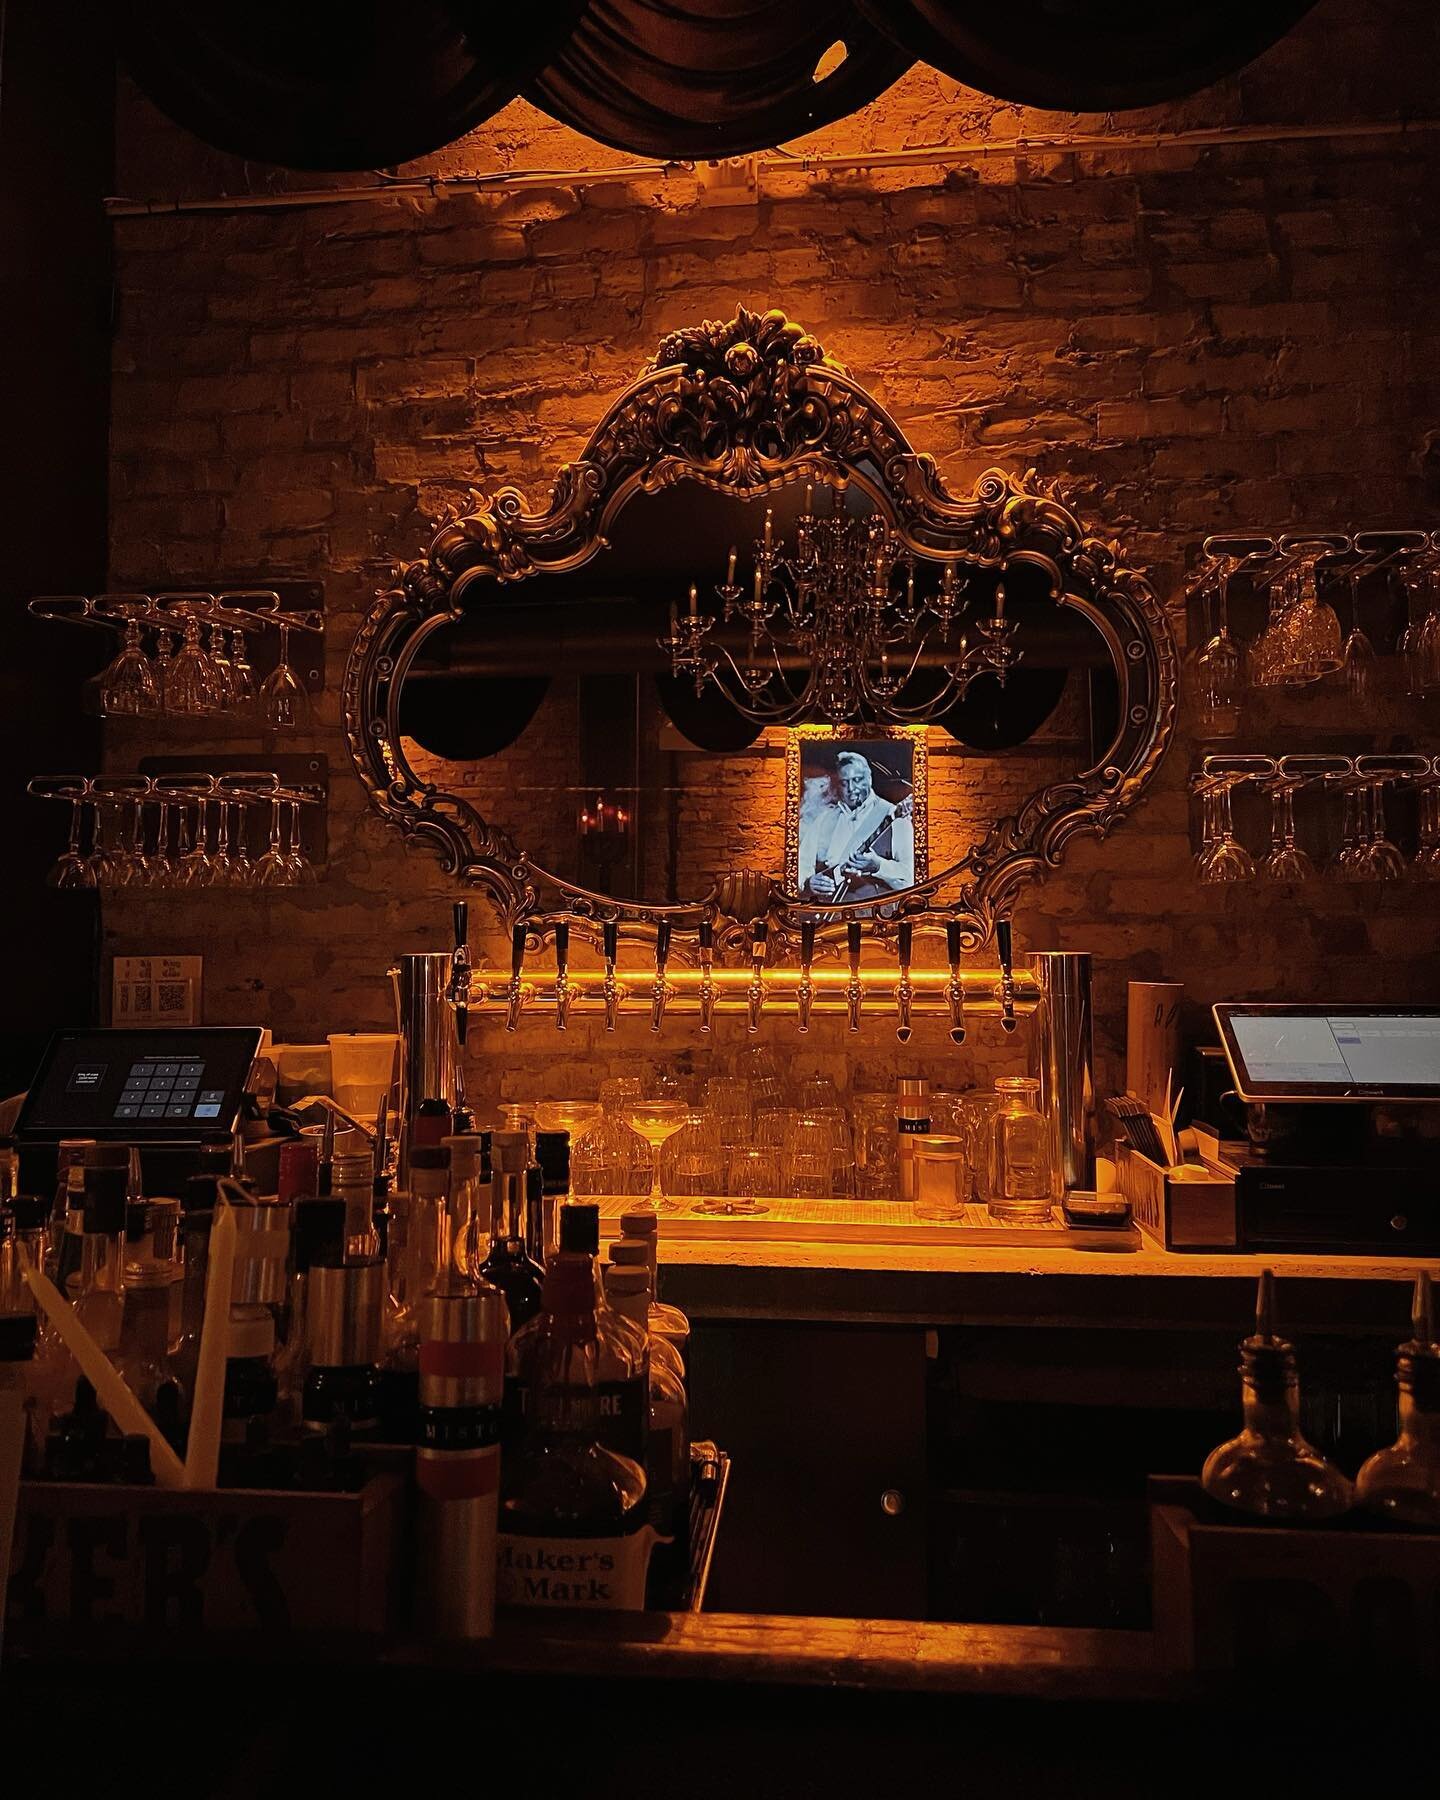 🍸氛圍感十足的酒吧
.
#chicago #Illinois #bar #kingofcups #酒吧 #cocktails